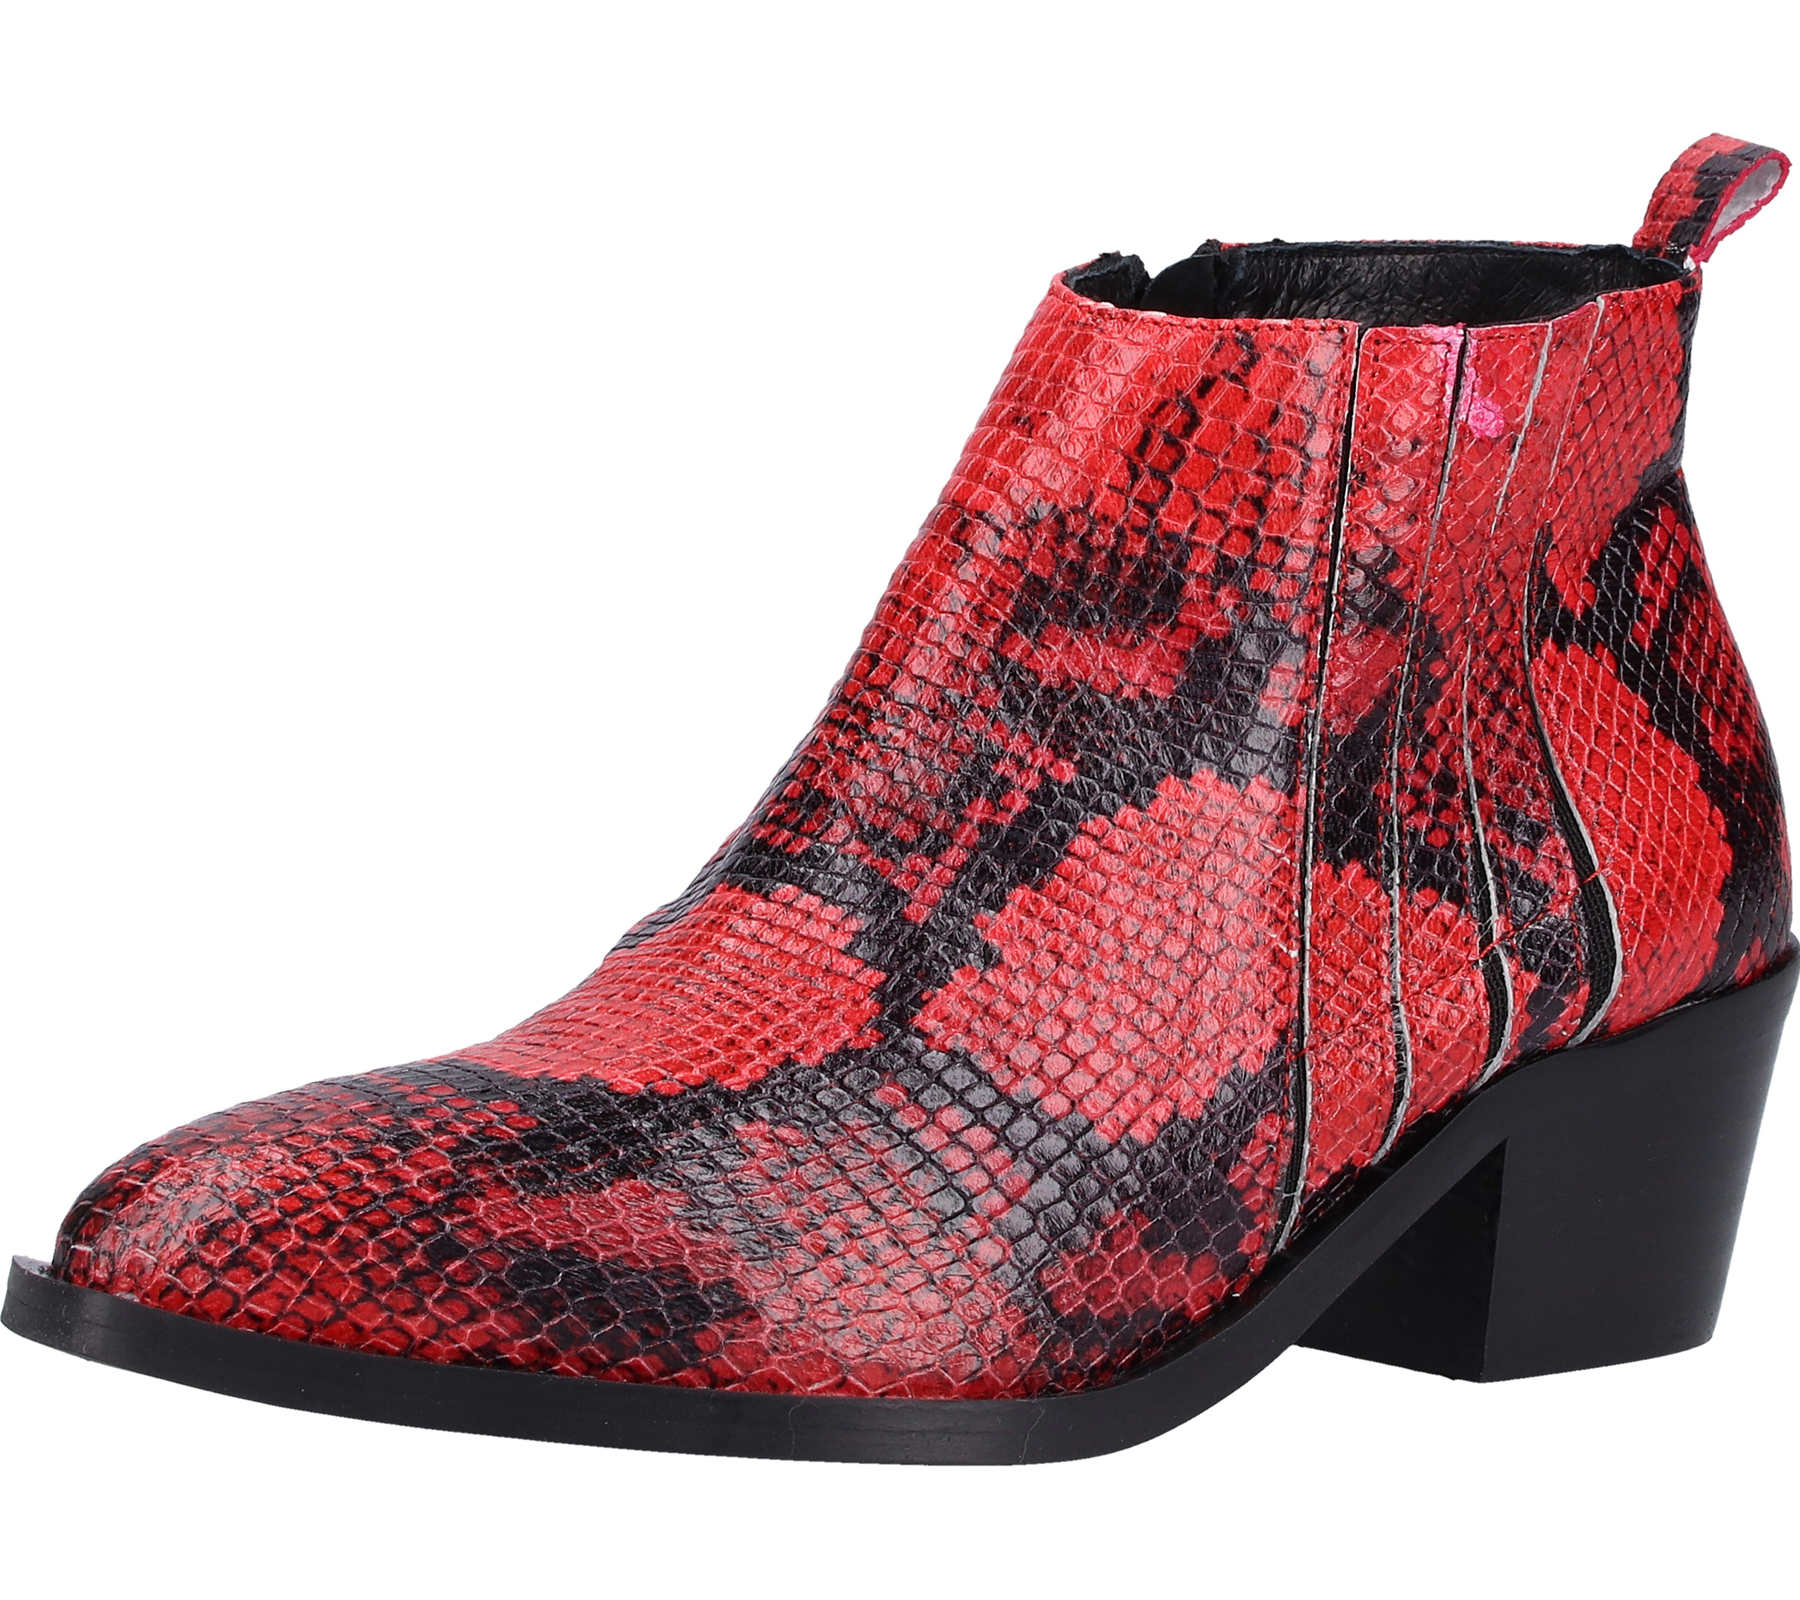 ILC Damen Stiefel elegante Echtleder-Stiefelette Absatz-Schuhe mit Allover-Muster 514513 Rot/Schwarz von ILC